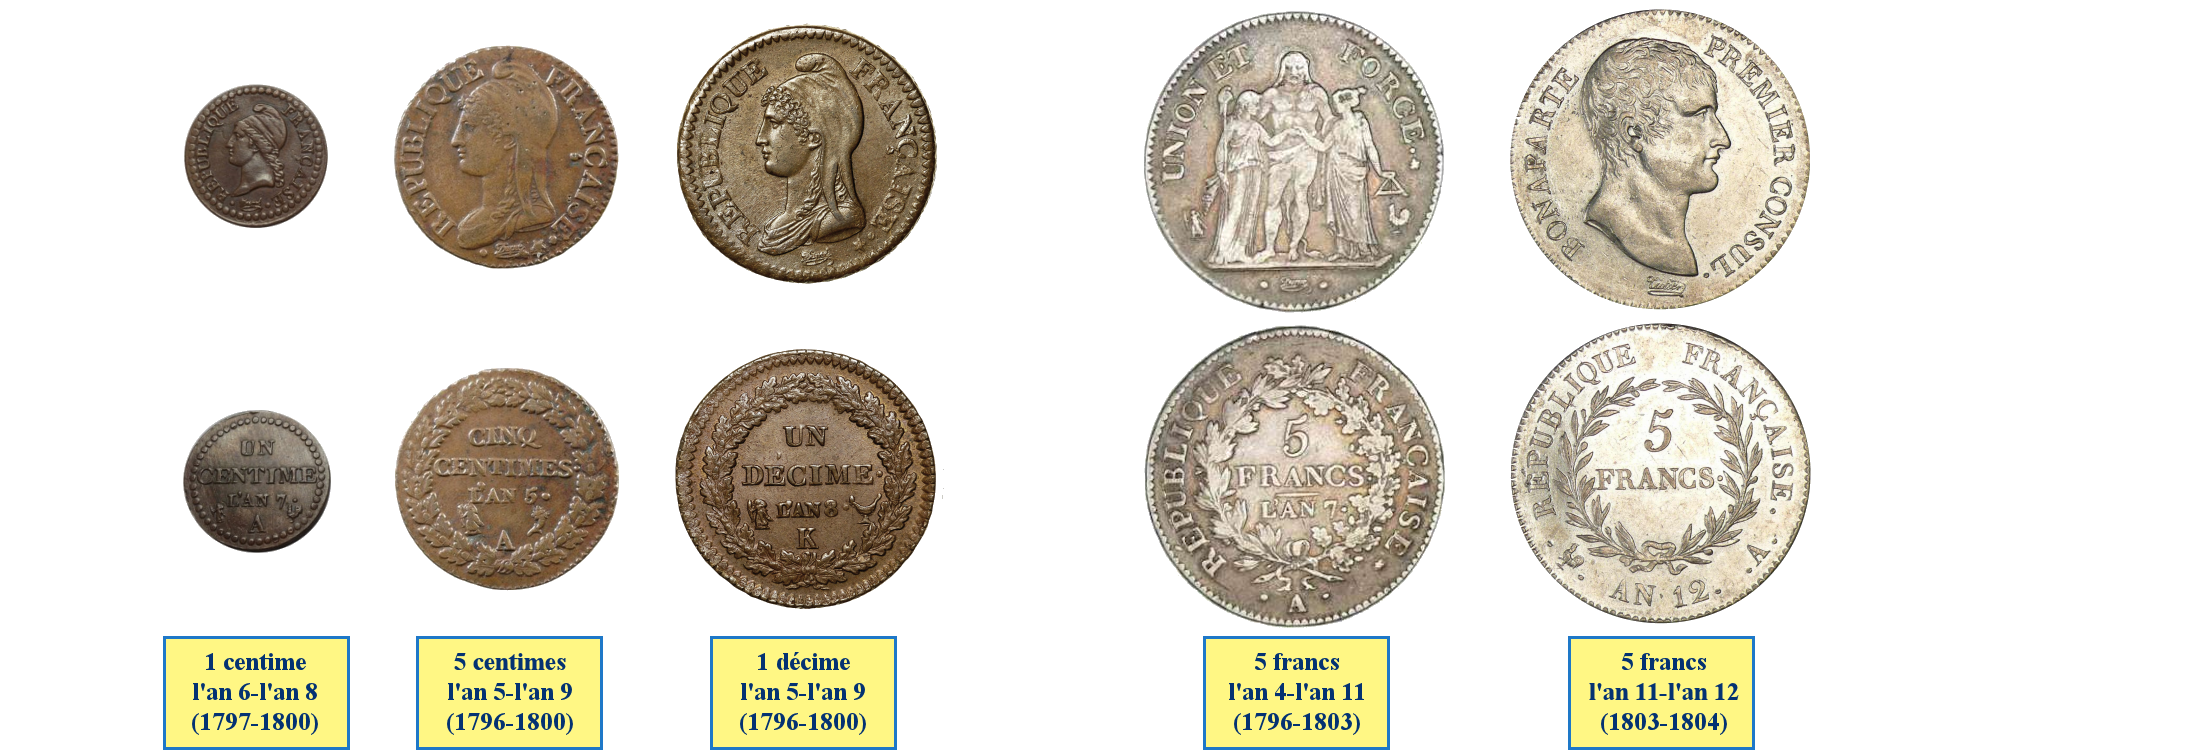 Photos de pièces de monnaies de la Première République